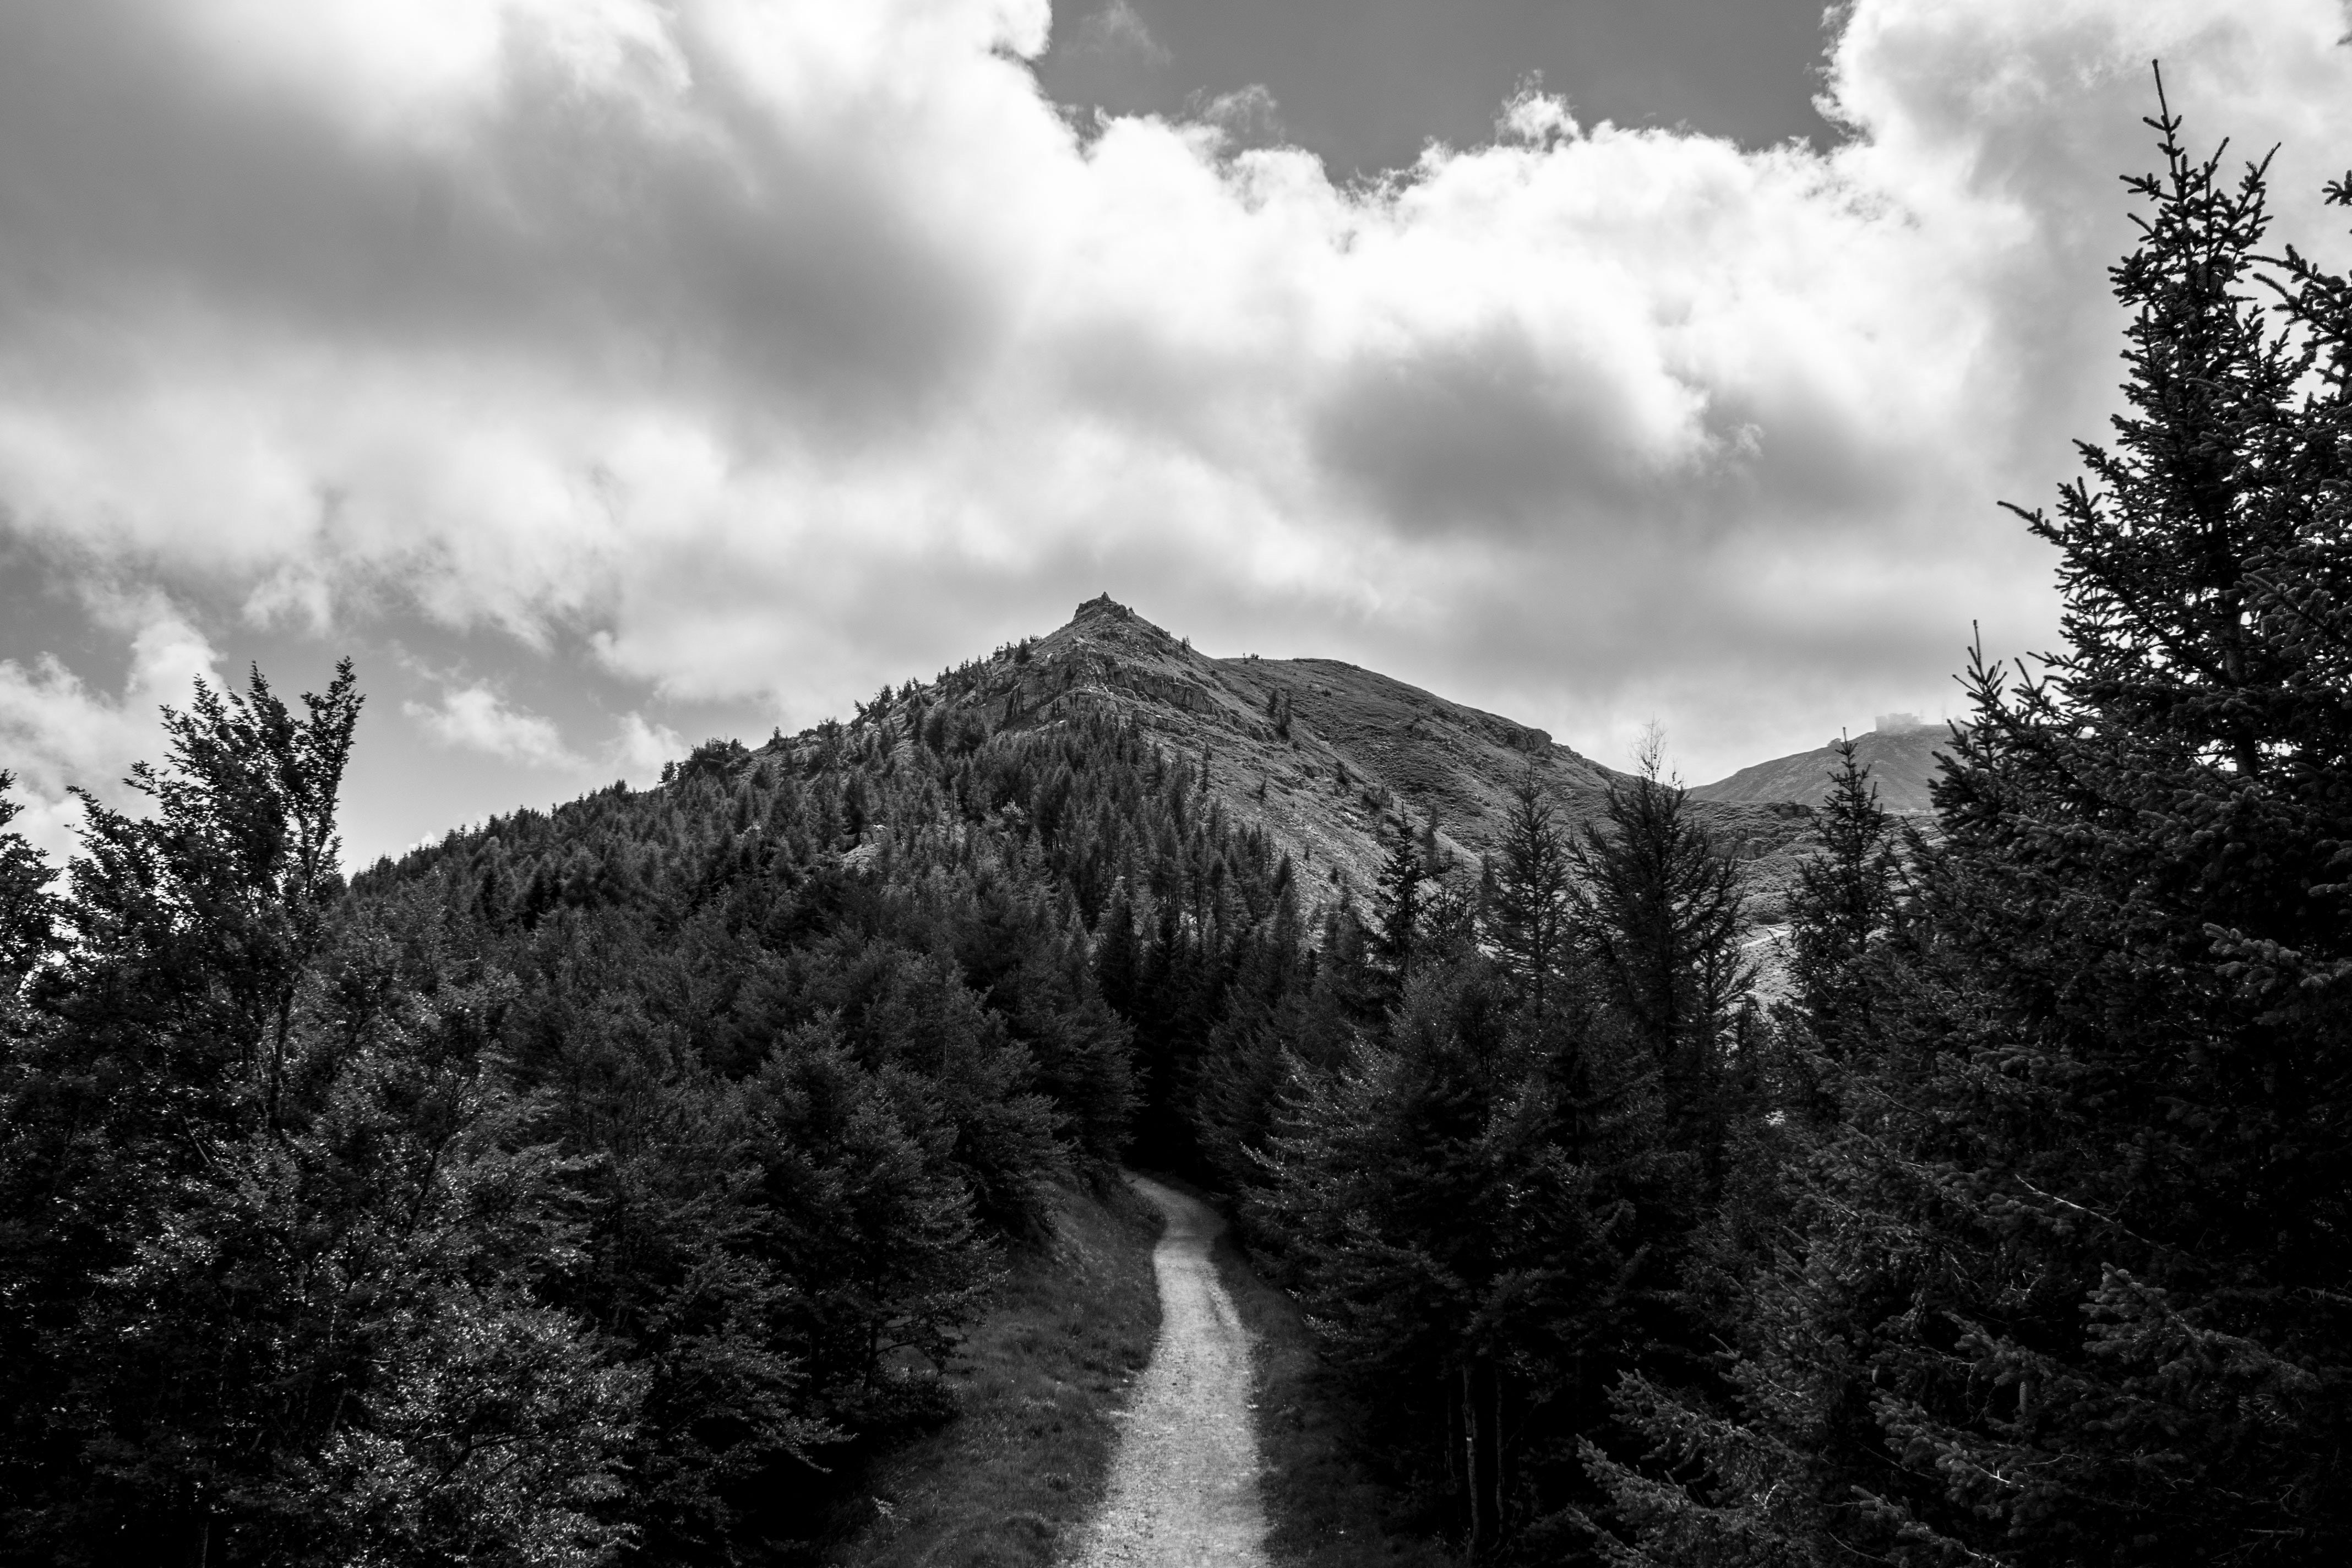 Caminho da montanha até o cume ladeado por árvores. Foto